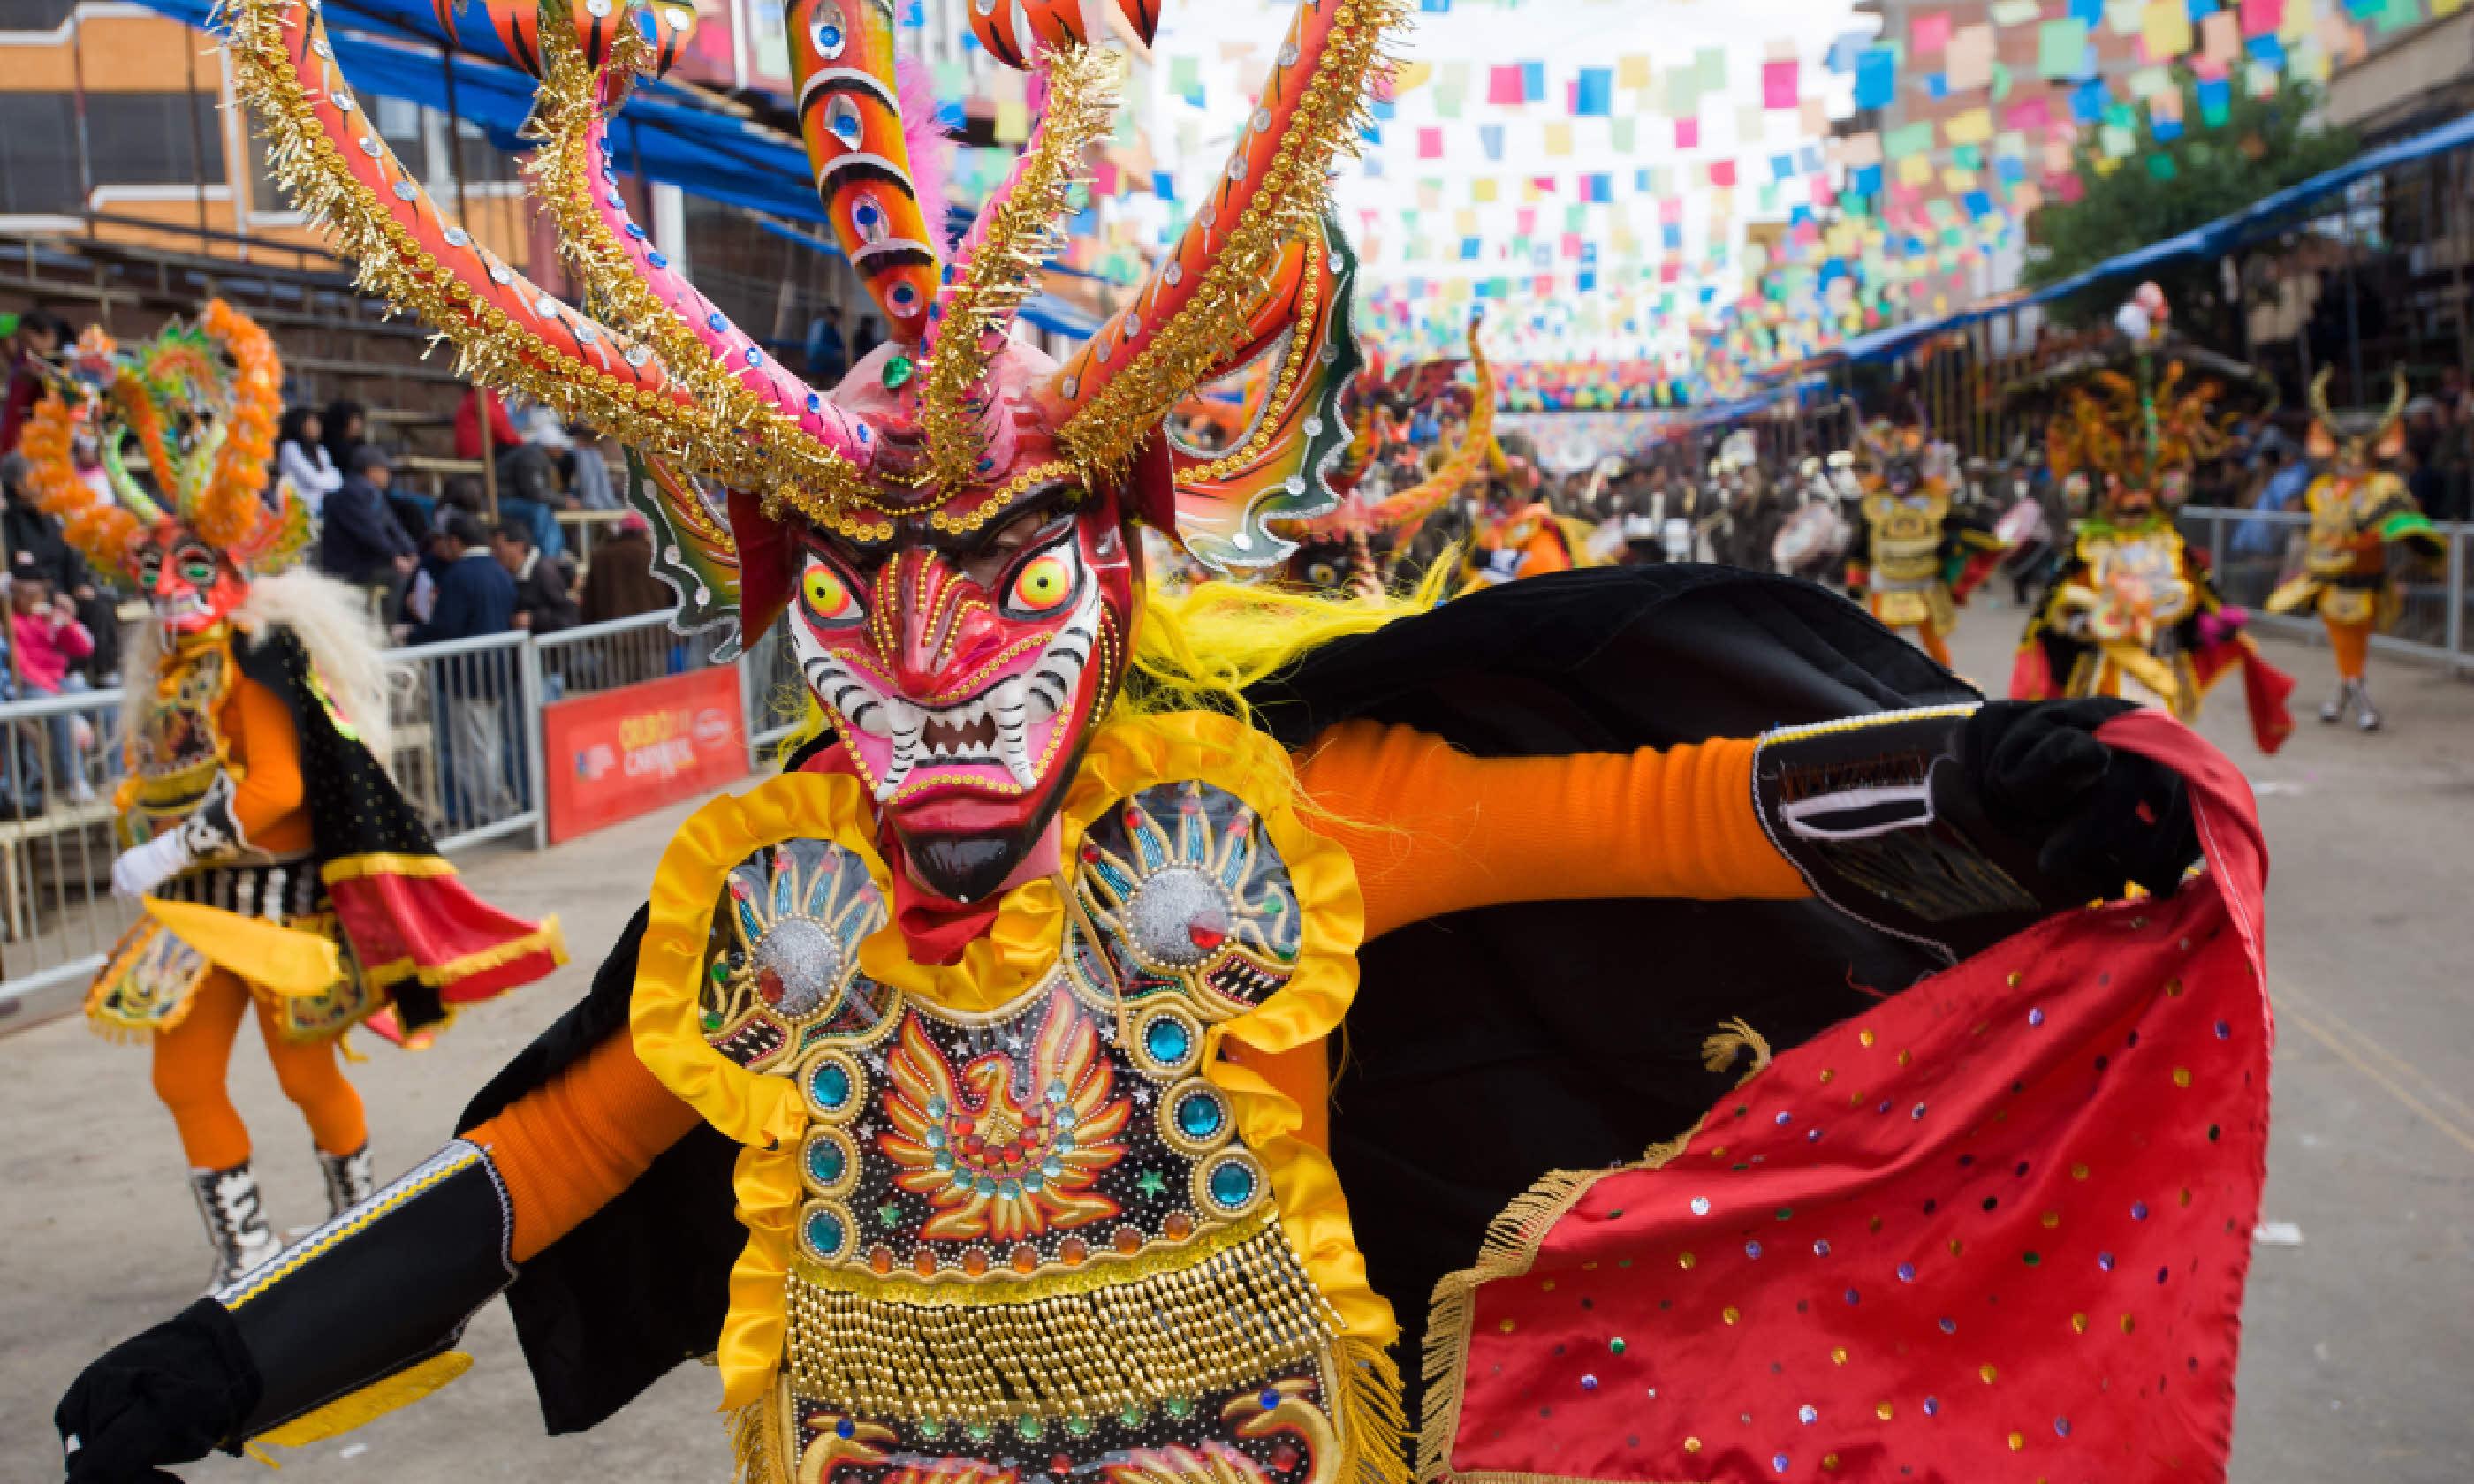 Dancers at Oruro Carnival in Bolivia (Shutterstock: see credit below)